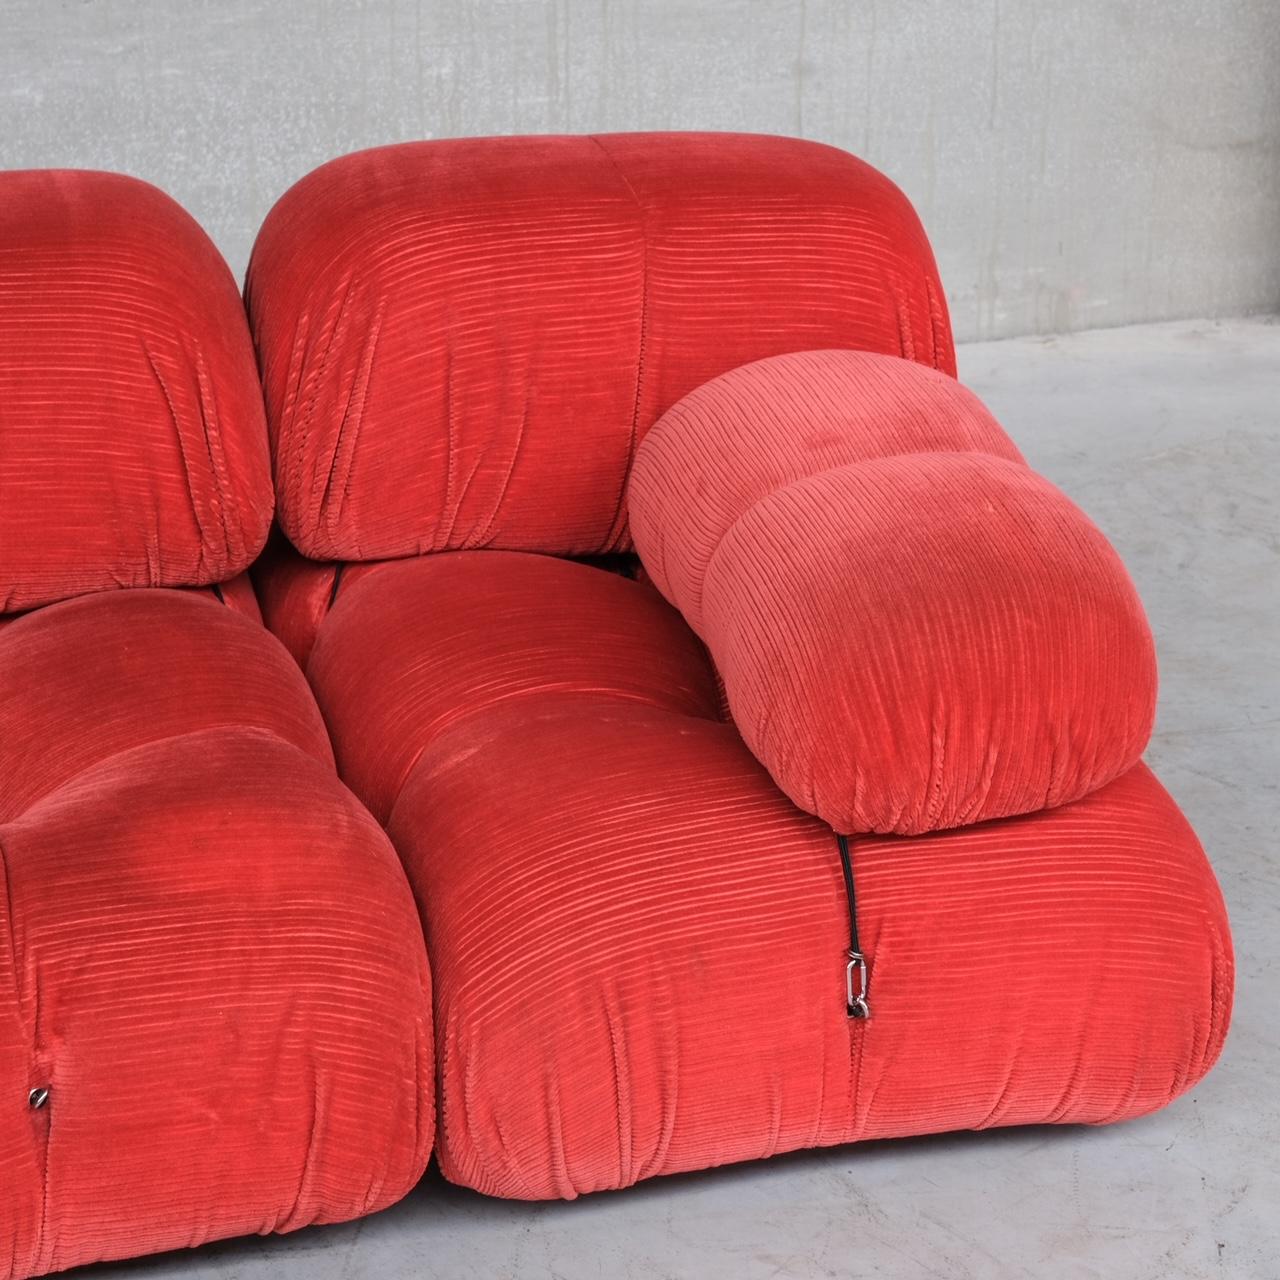 Mario Bellini 'Camaleonda' Mid-Century Original Sofa In Good Condition In London, GB